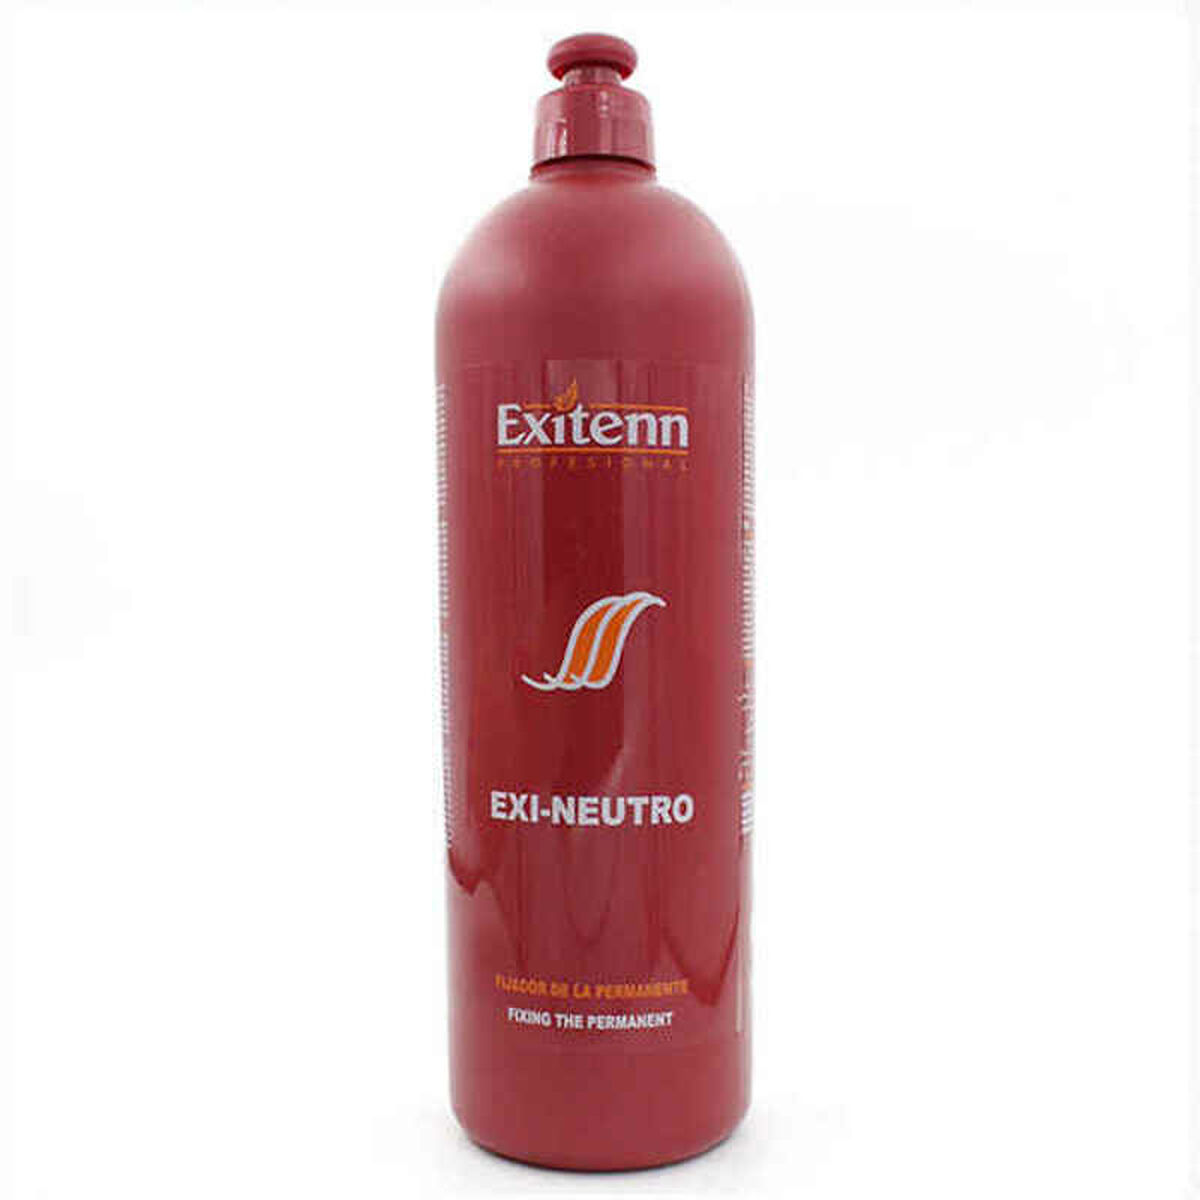 Neutralus balzamas Exi-neutro Exitenn (1000 ml) (1000 ml)